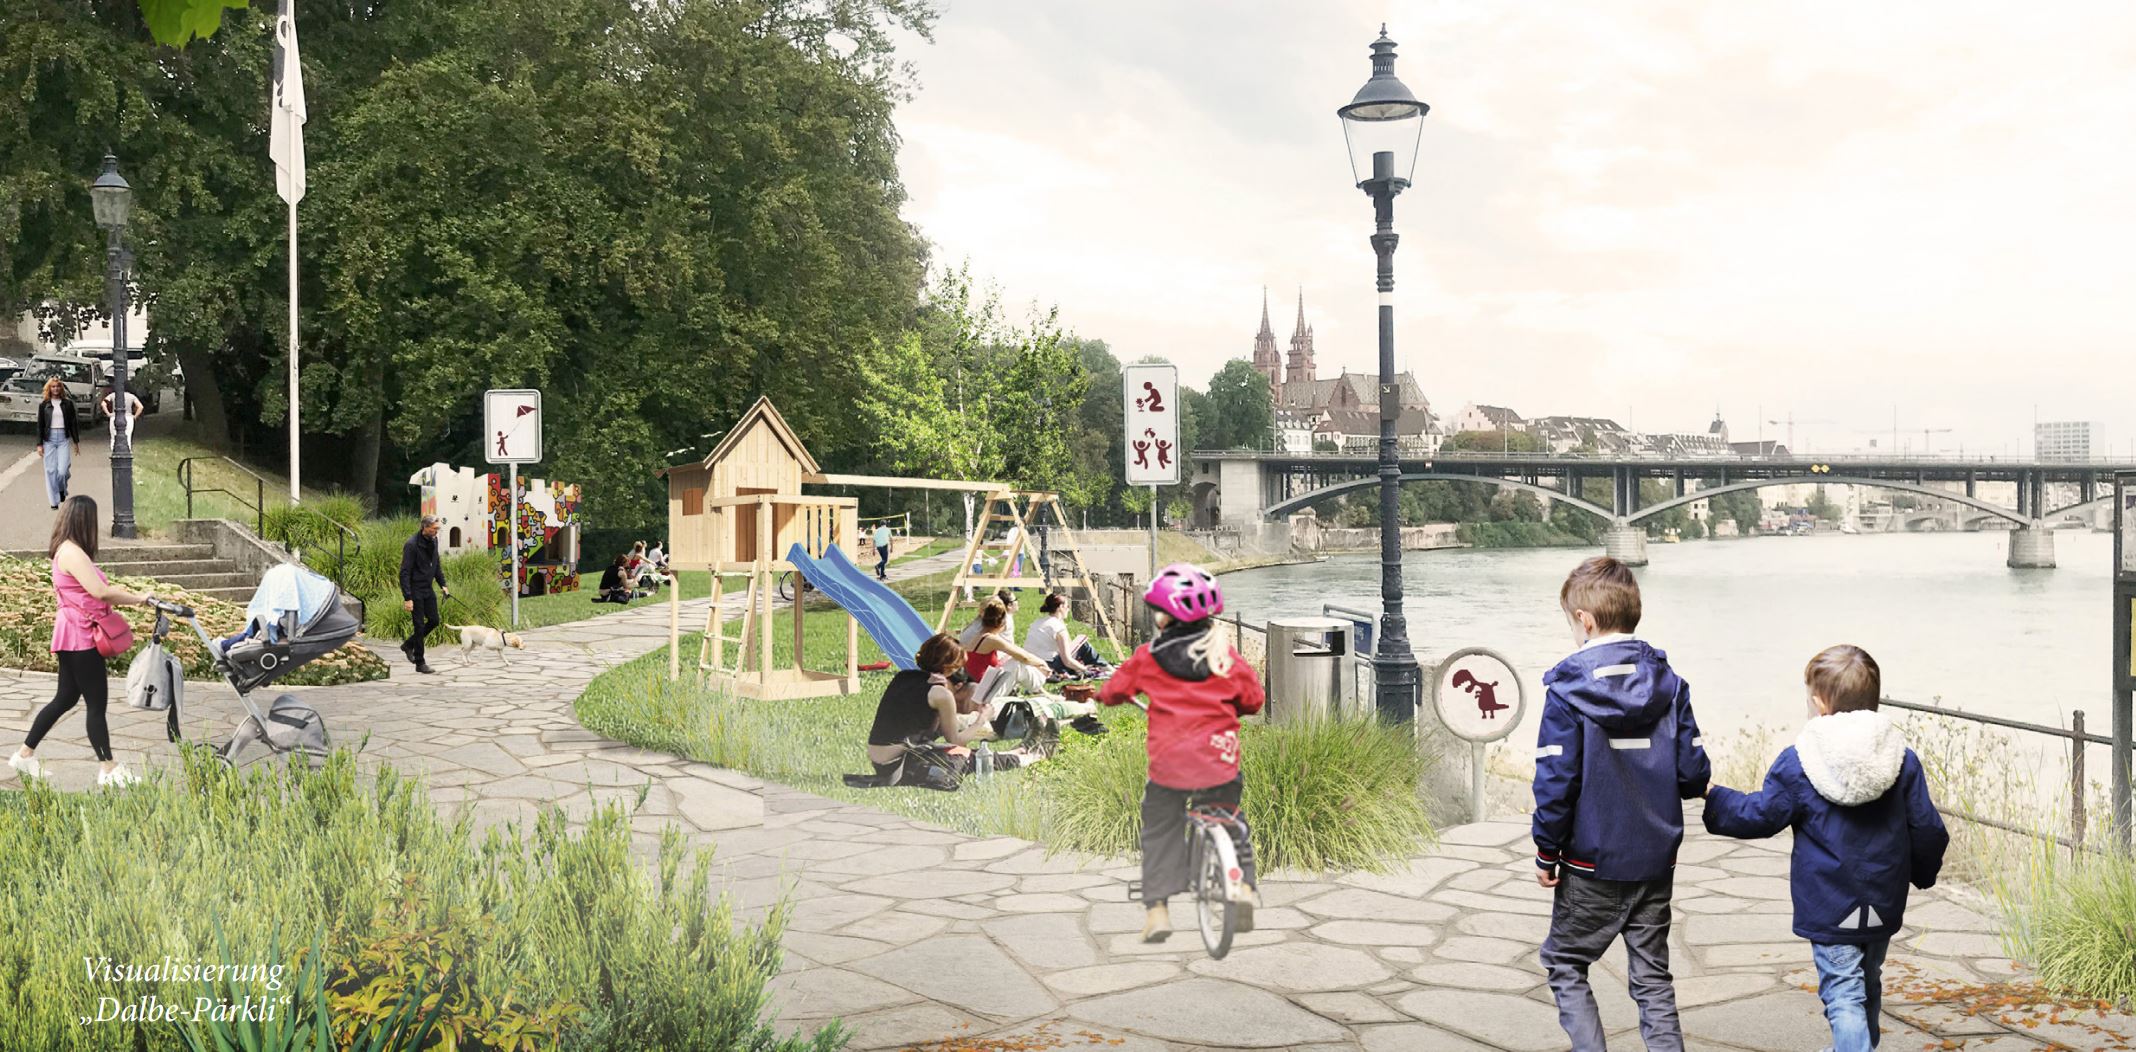 Visualisierung eines möglichen neuen Parks am Rhein